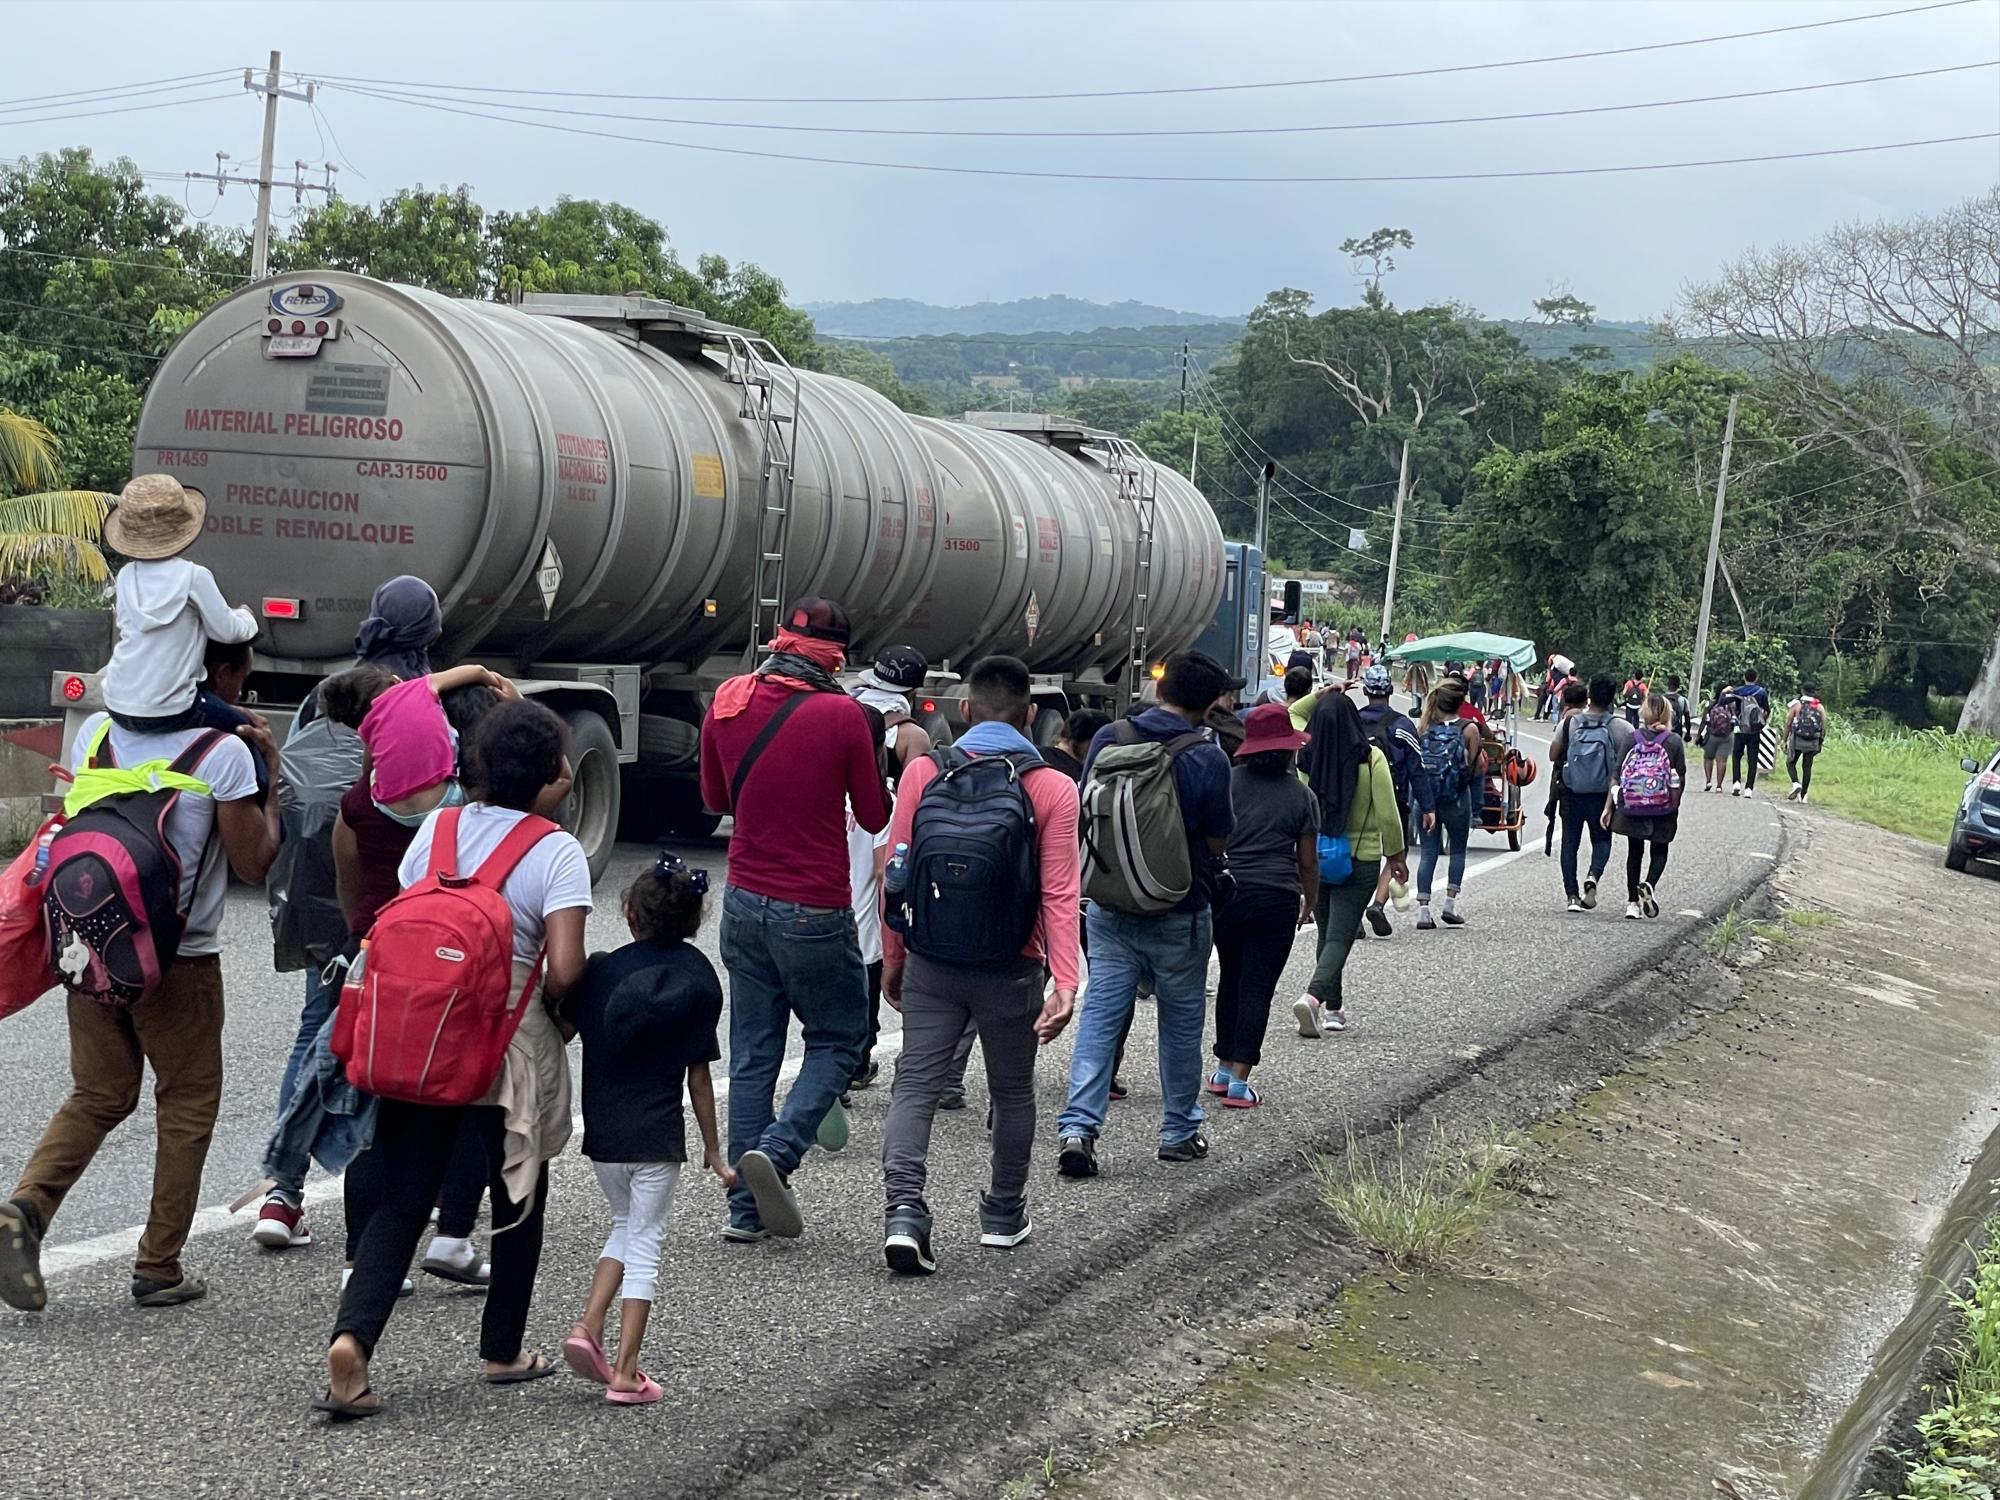 $!La imposibilidad de obtener refugio en México ha impulsado la formación de caravanas migrantes que buscan escapar de los operativos de contención.